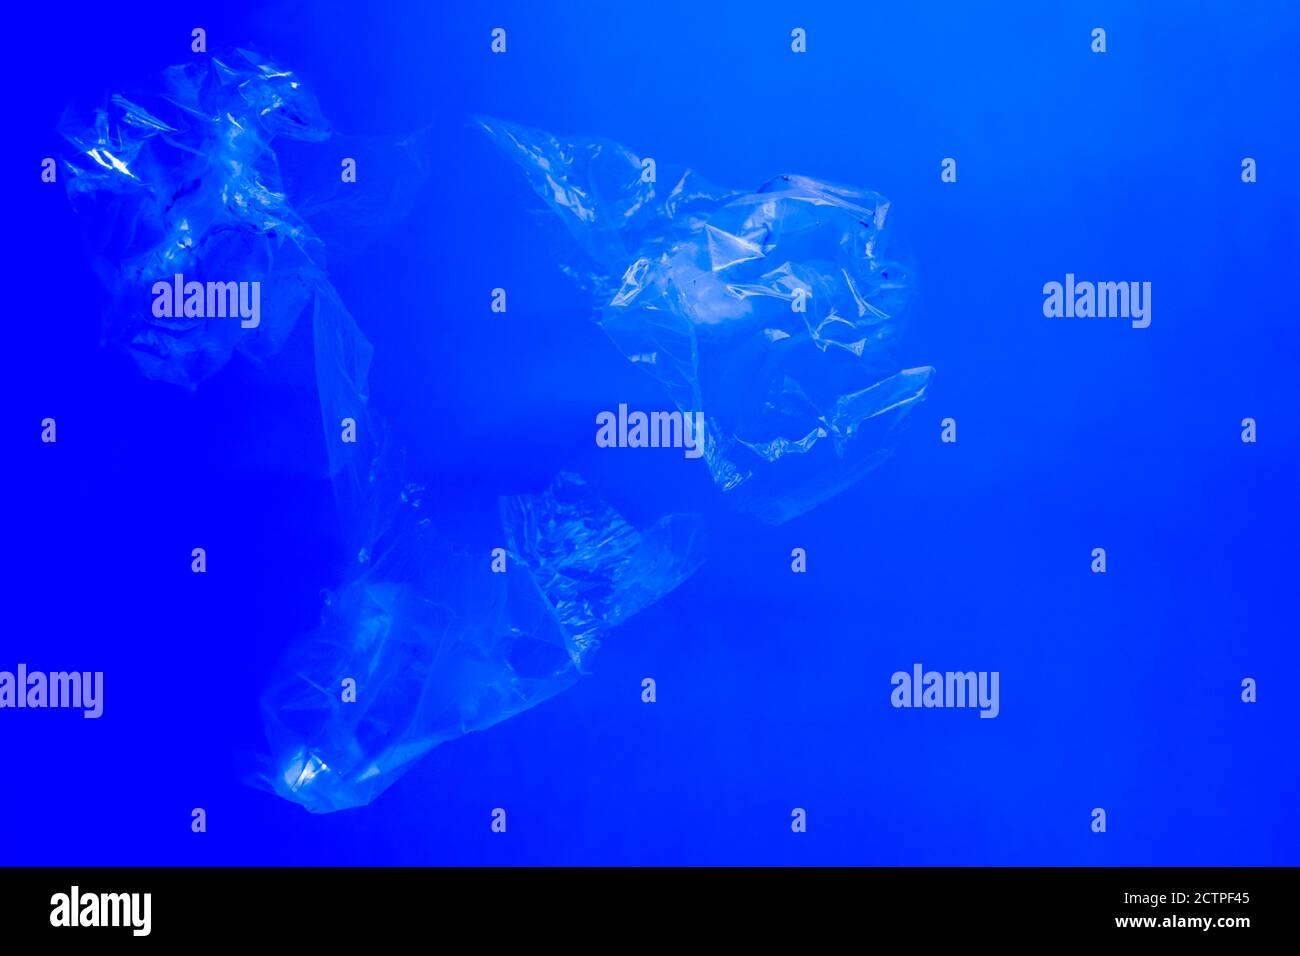 Sacs en plastique transparent flottant sous l'eau bleue de l'océan, pollution par des déchets plastiques non biodégradables, danger pour la faune marine Banque D'Images